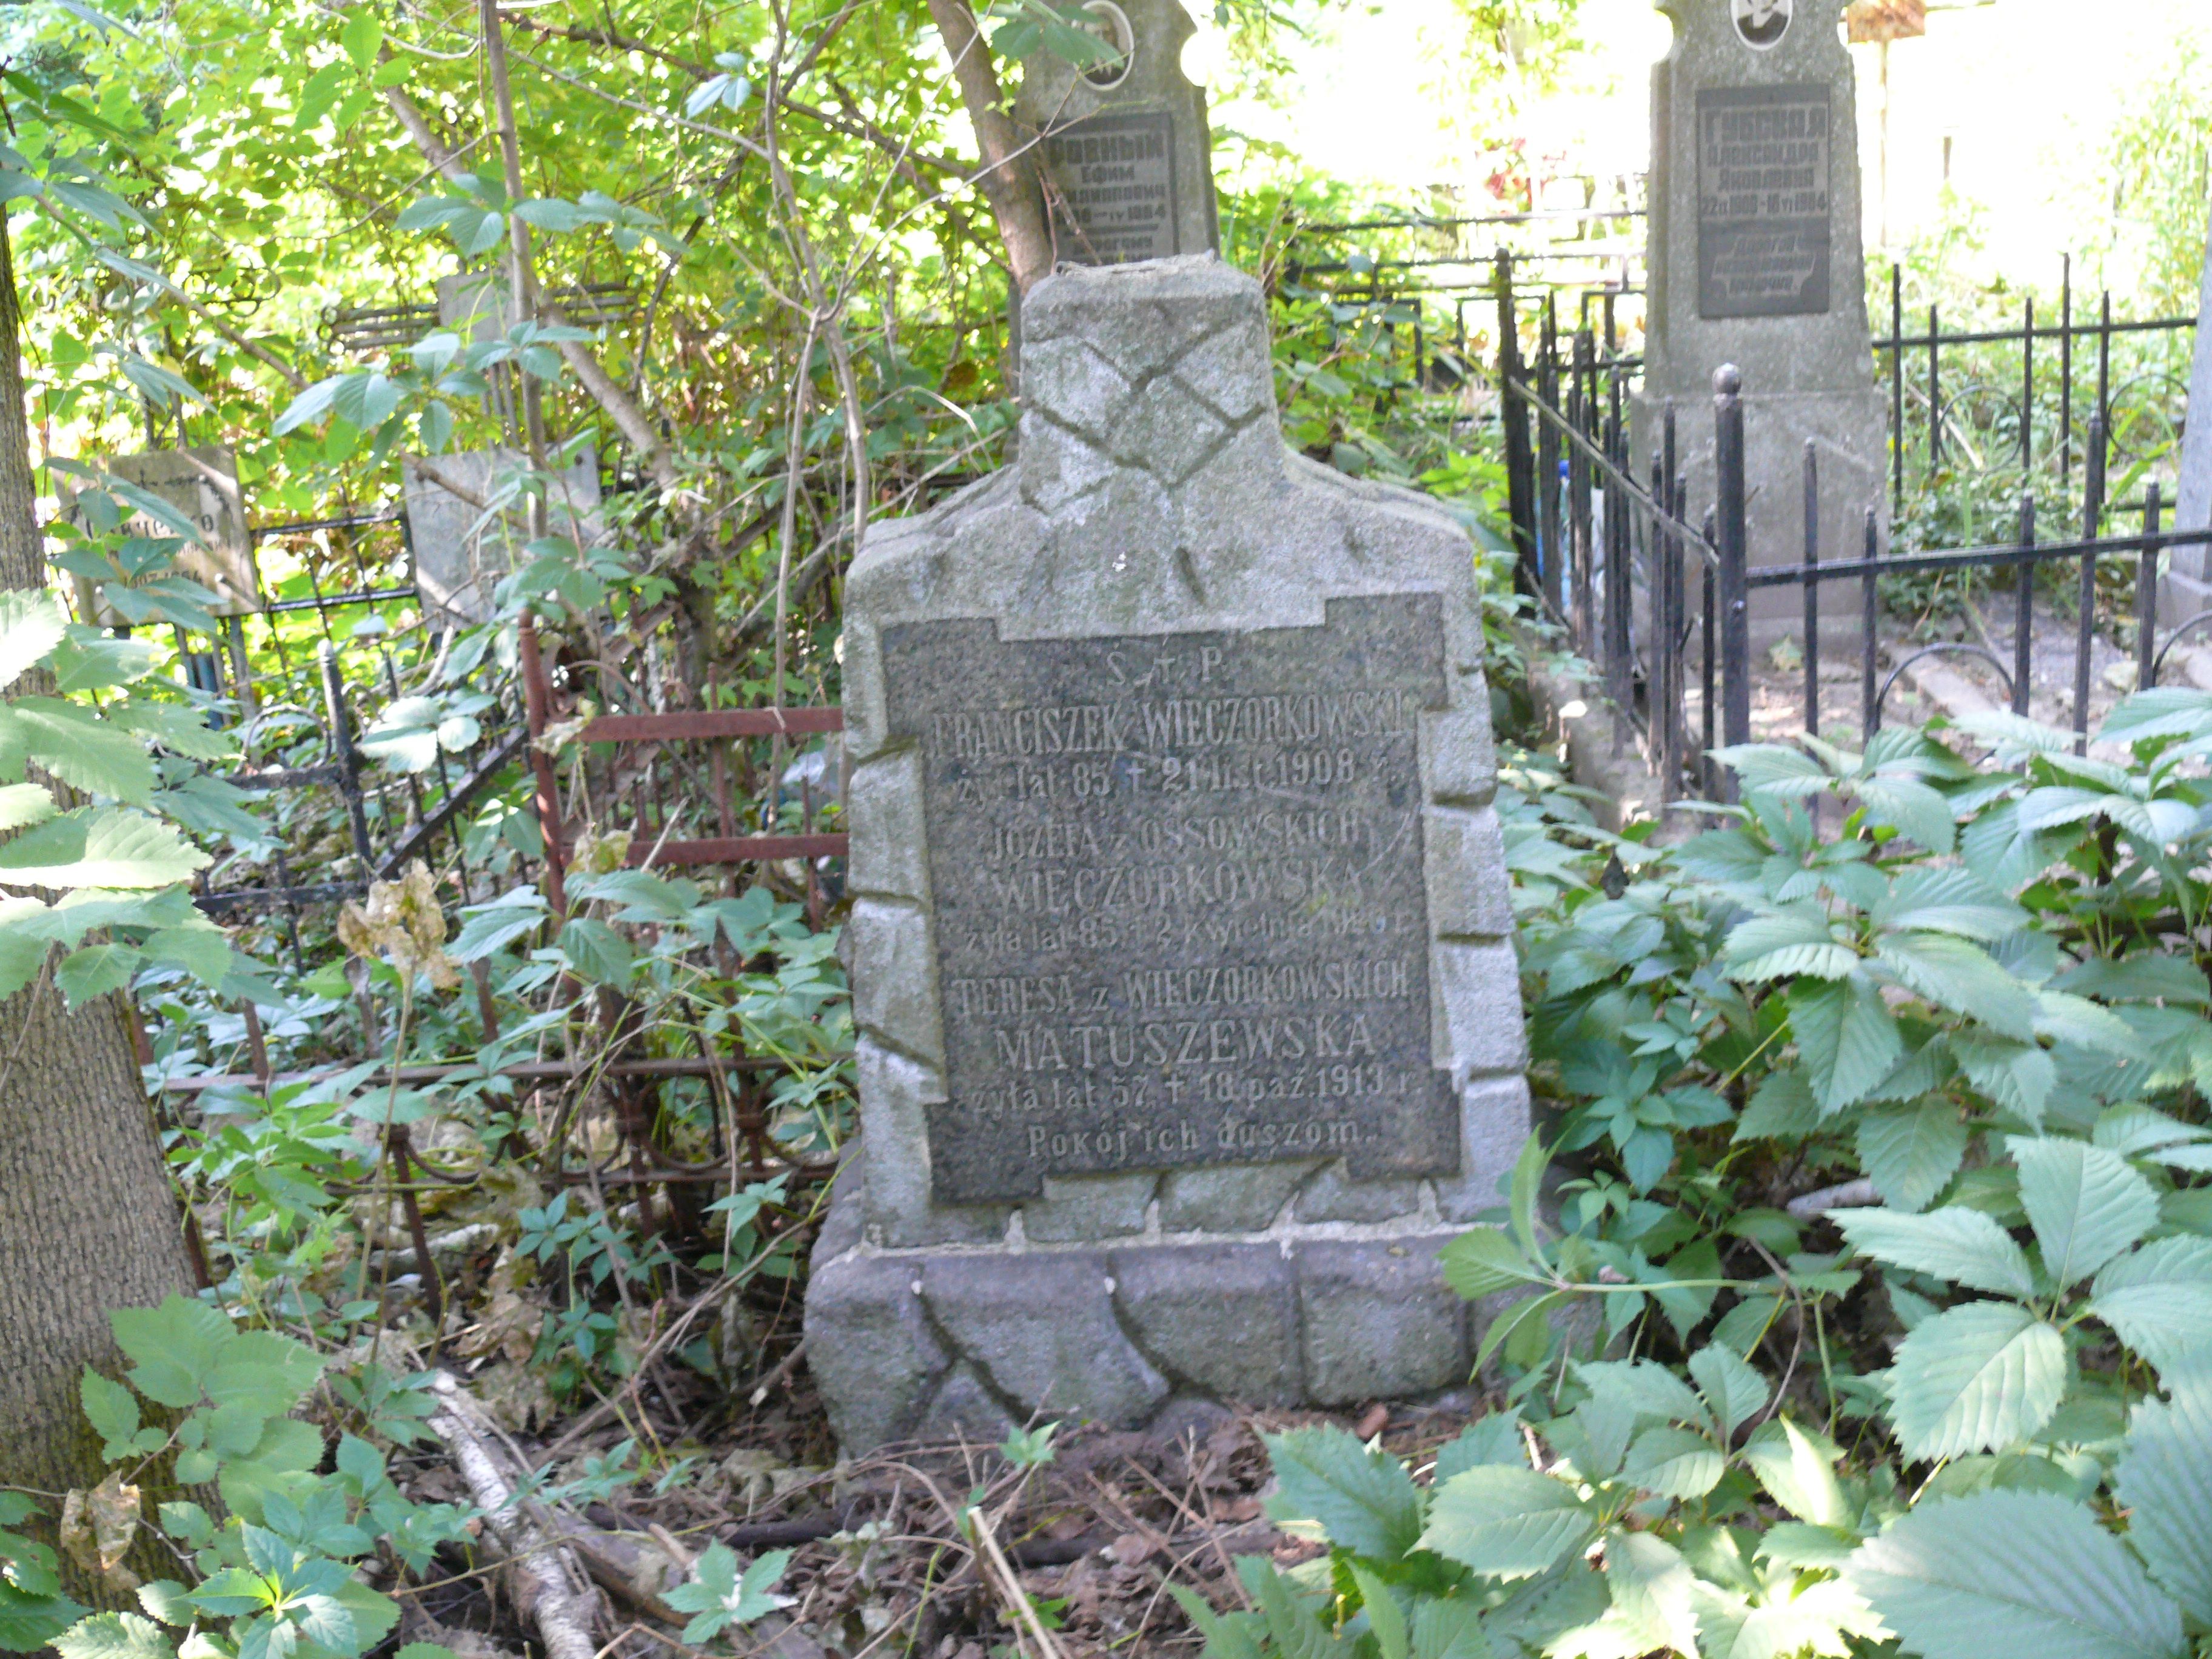 Tombstone of Franciszek and Józefa Wieczorkowski, Teresa Matuszewska